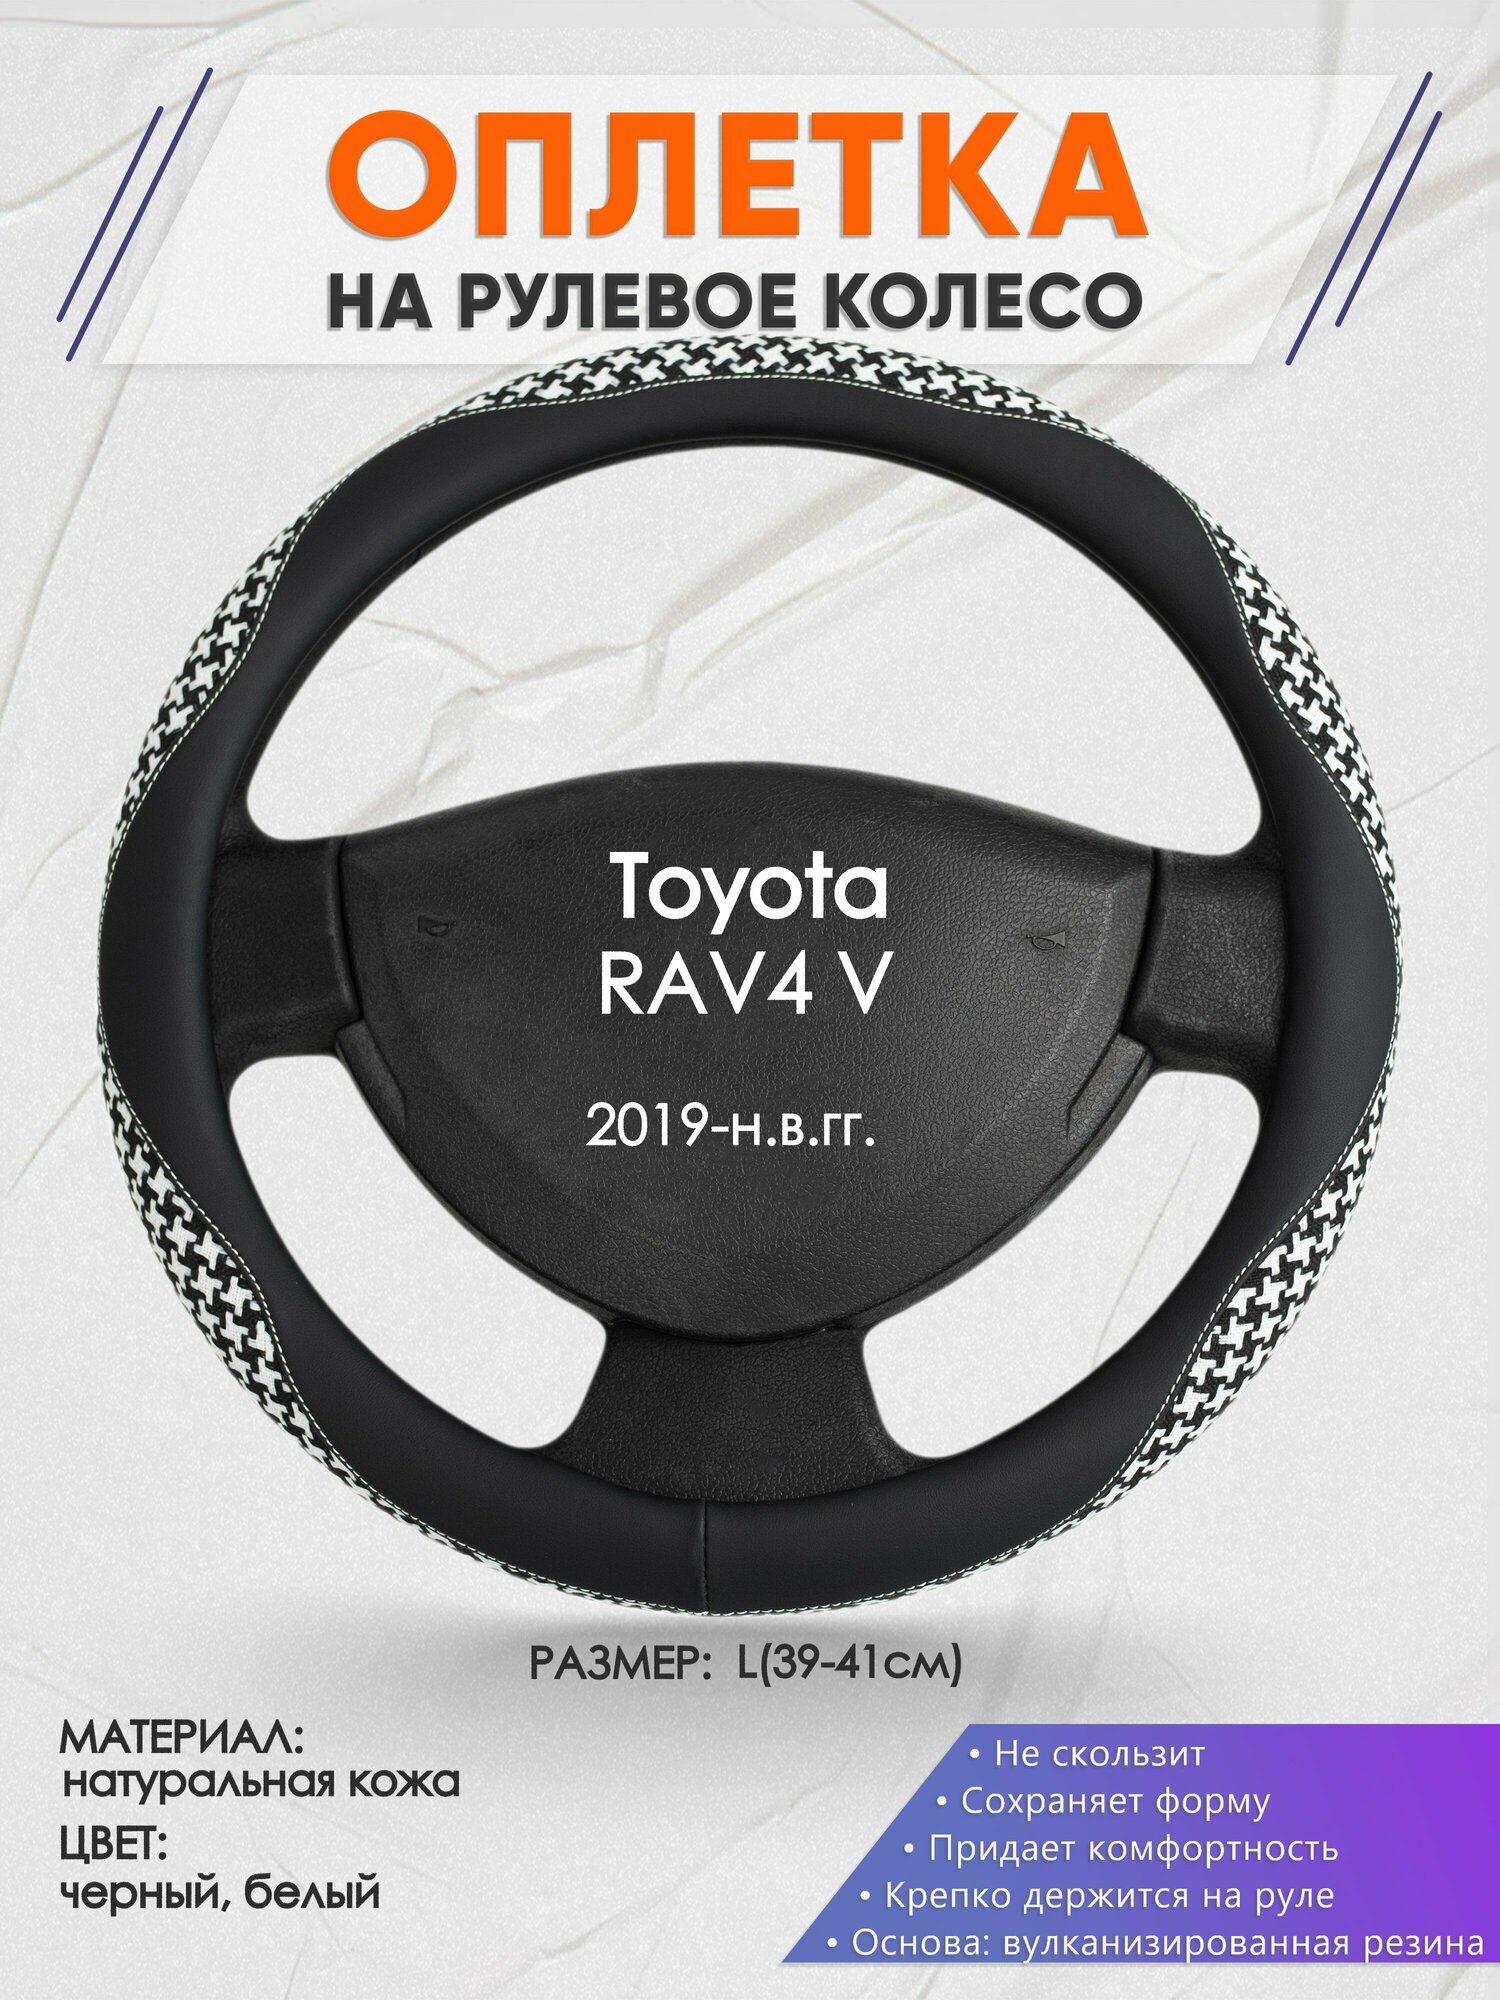 Оплетка на руль для Toyota RAV4 V(Тойота Рав 4) 2019-н. в, L(39-41см), Натуральная кожа 21